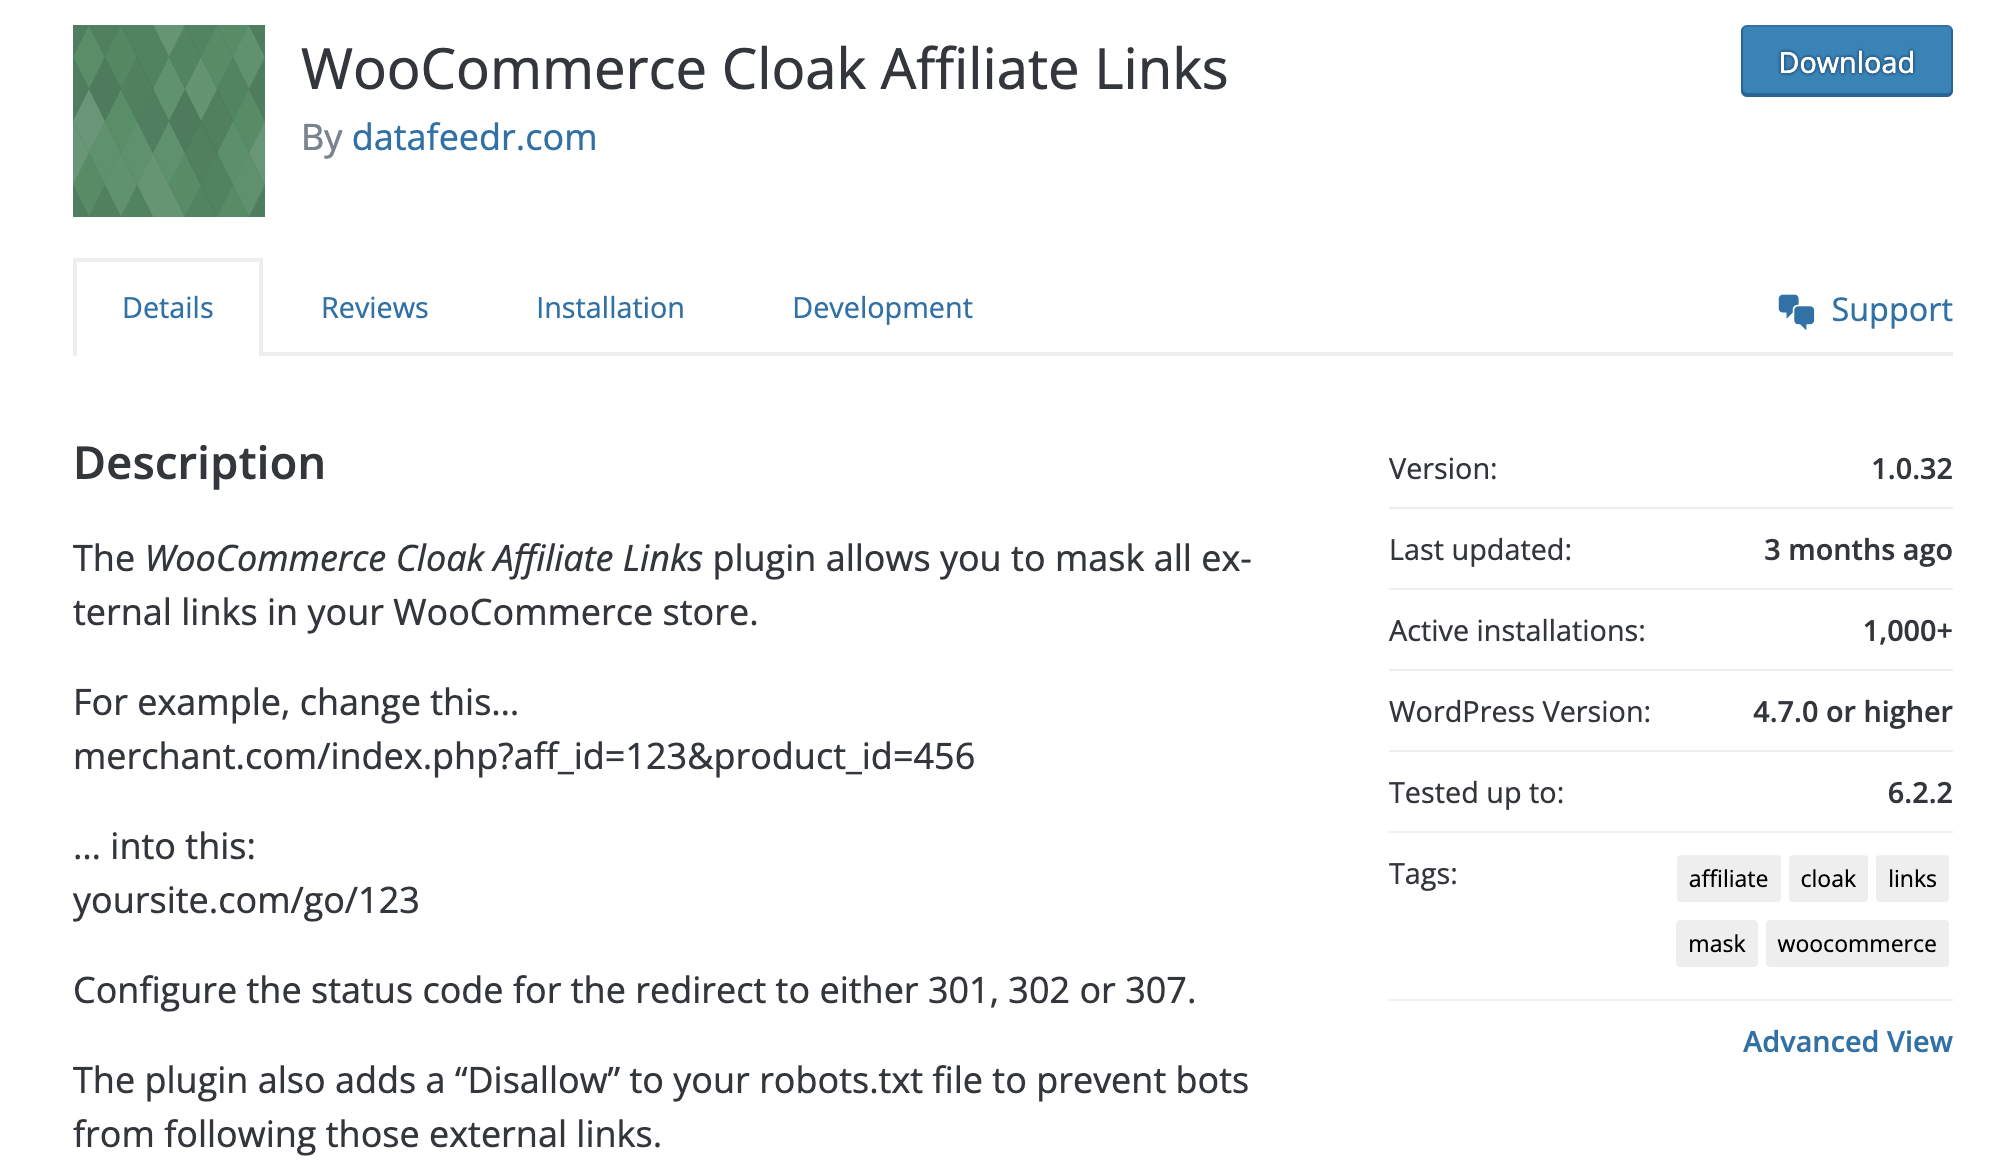 WooCommerce Cloak Affiliate Links